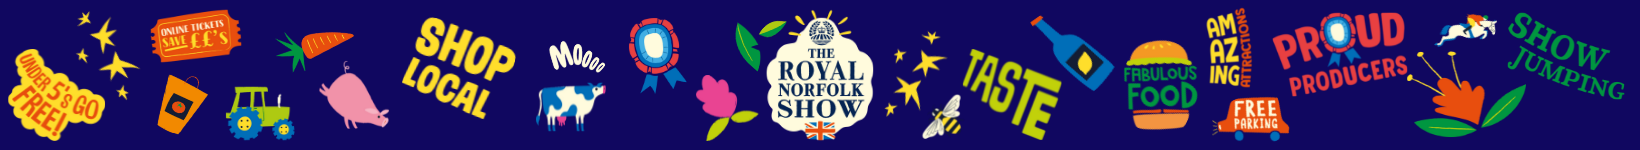 Royal Norfolk Show banner